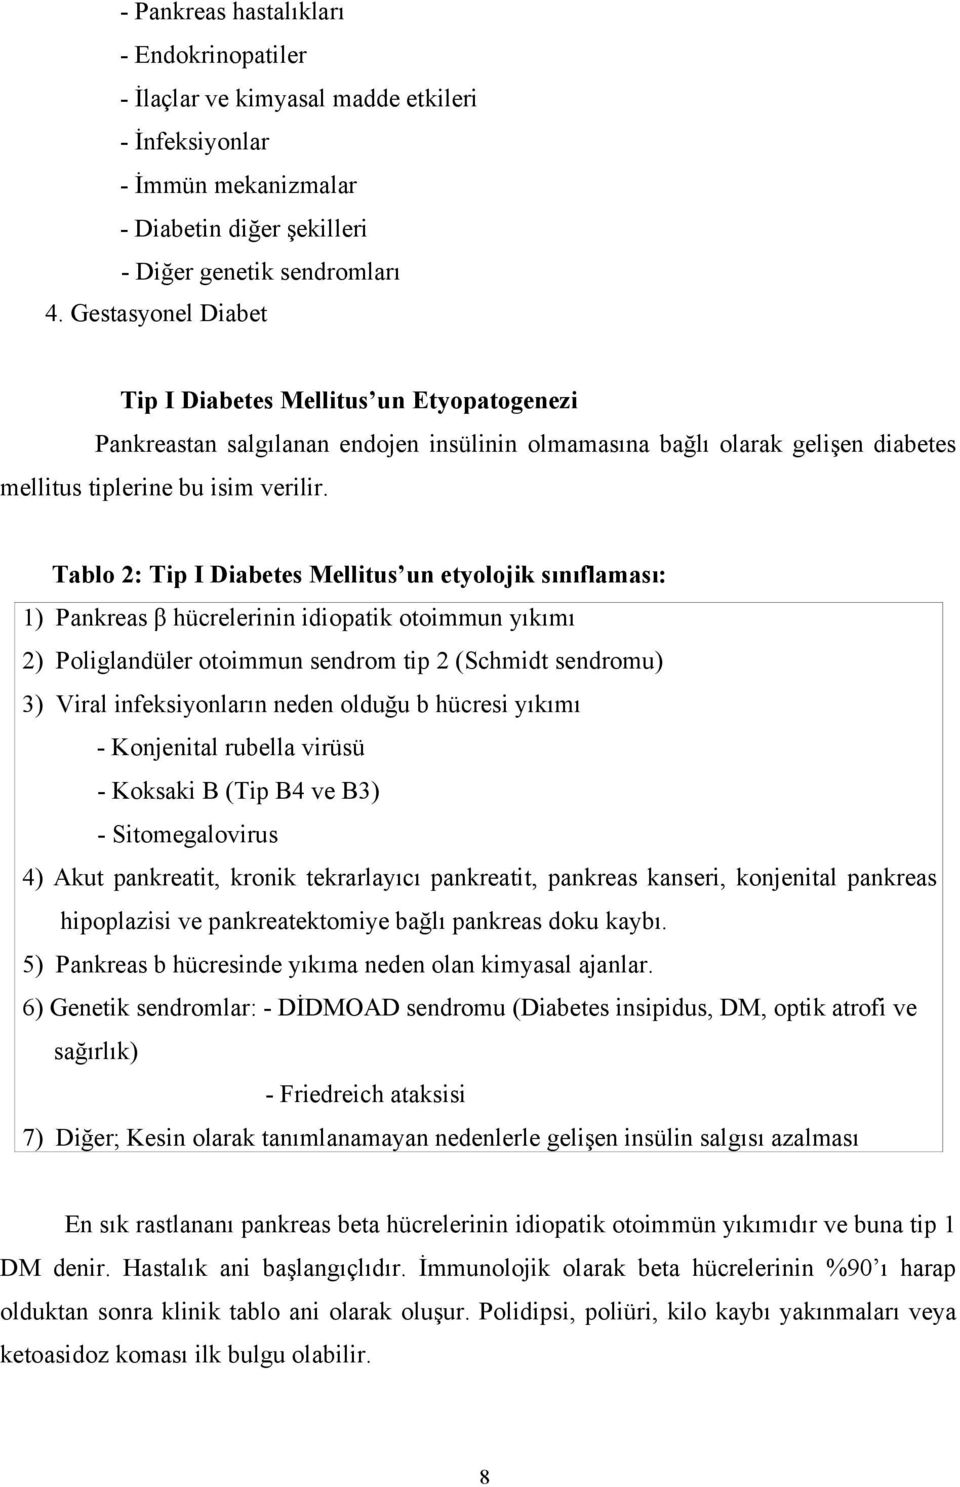 Tablo 2: Tip I Diabetes Mellitus un etyolojik sınıflaması: 1) Pankreas β hücrelerinin idiopatik otoimmun yıkımı 2) Poliglandüler otoimmun sendrom tip 2 (Schmidt sendromu) 3) Viral infeksiyonların